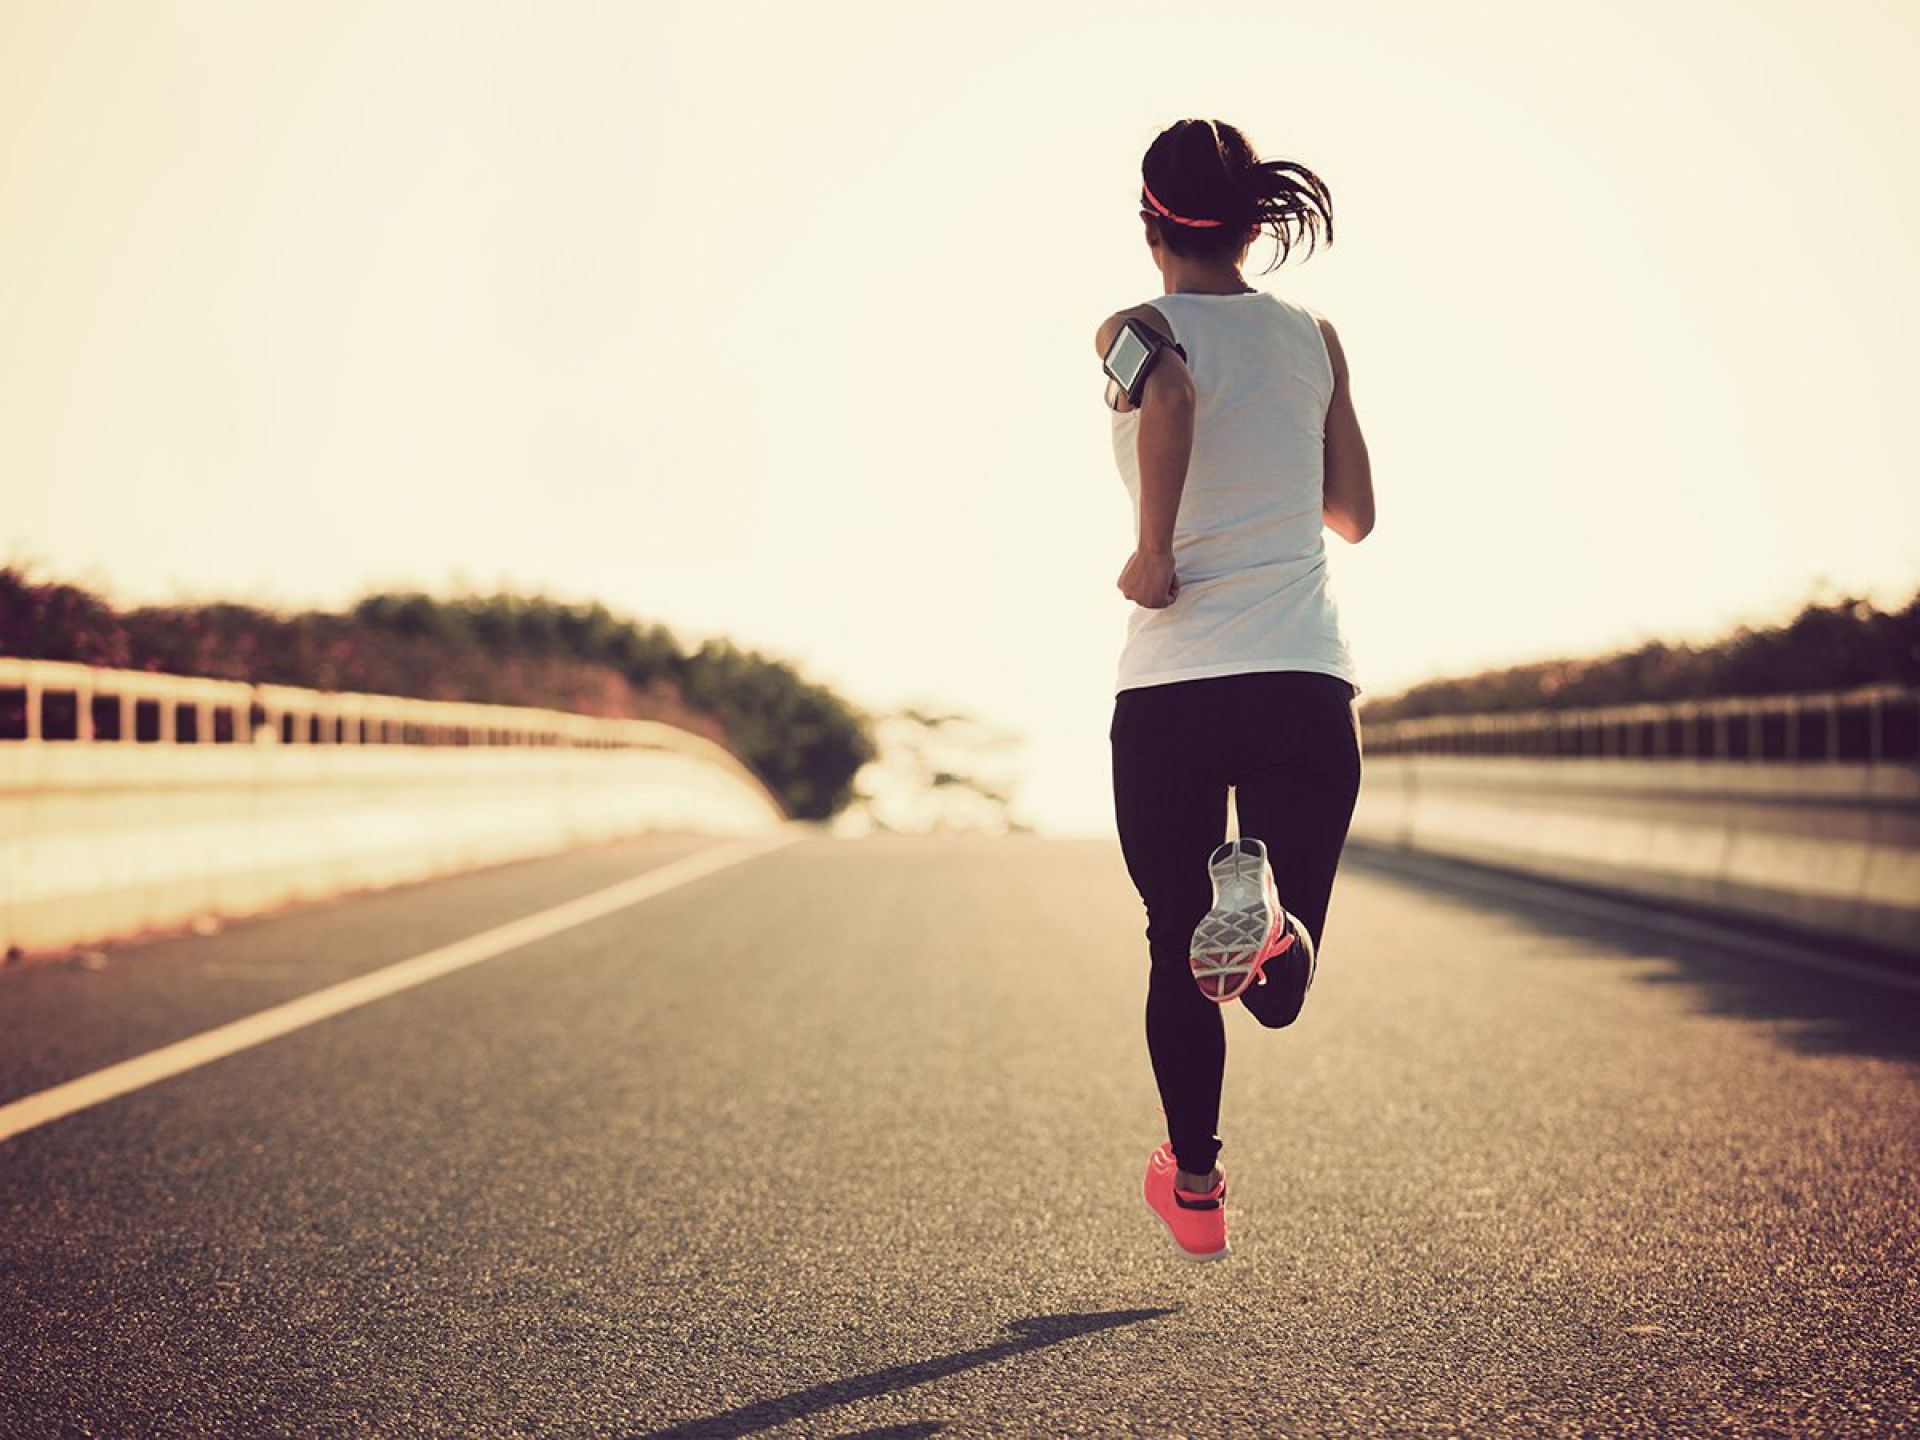 Τρέξιμο άθληση: Μυστικά για να βελτιώσετε τη φυσική σας κατάσταση